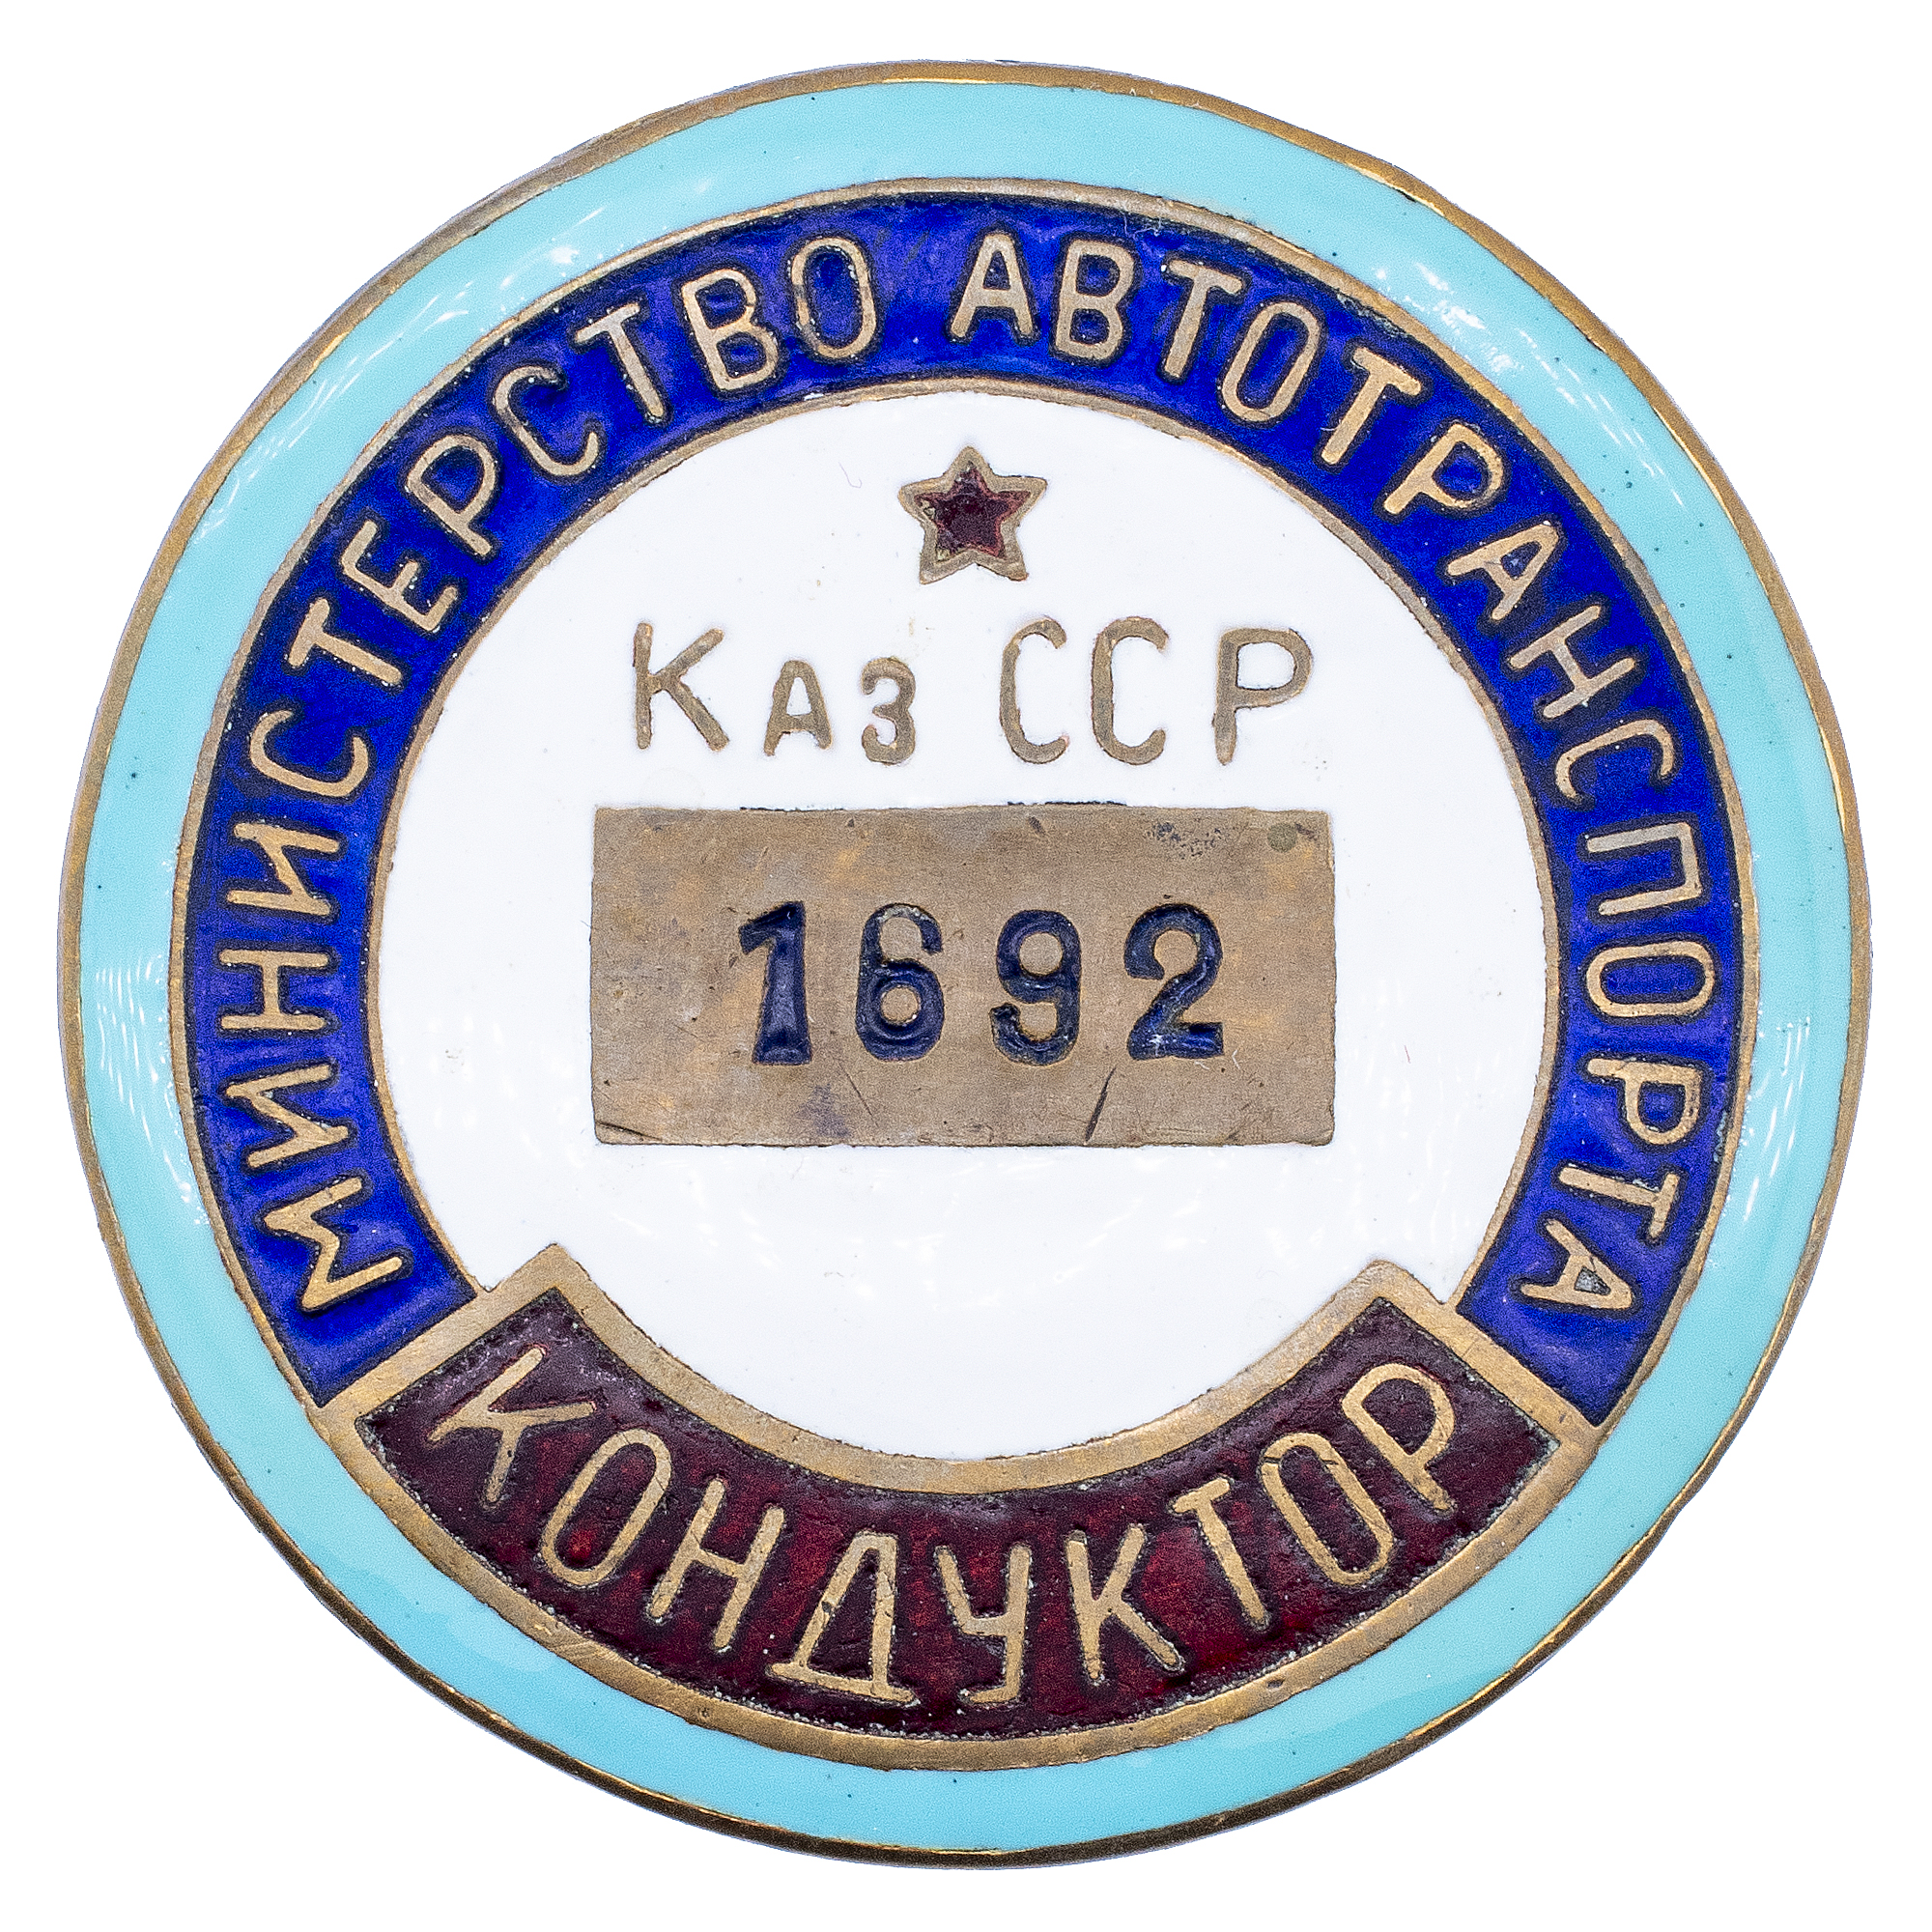 Служебный знак "Кондуктор". Министерство автотранспорта КазССР, № 1.692, АРТИКУЛ П22-17